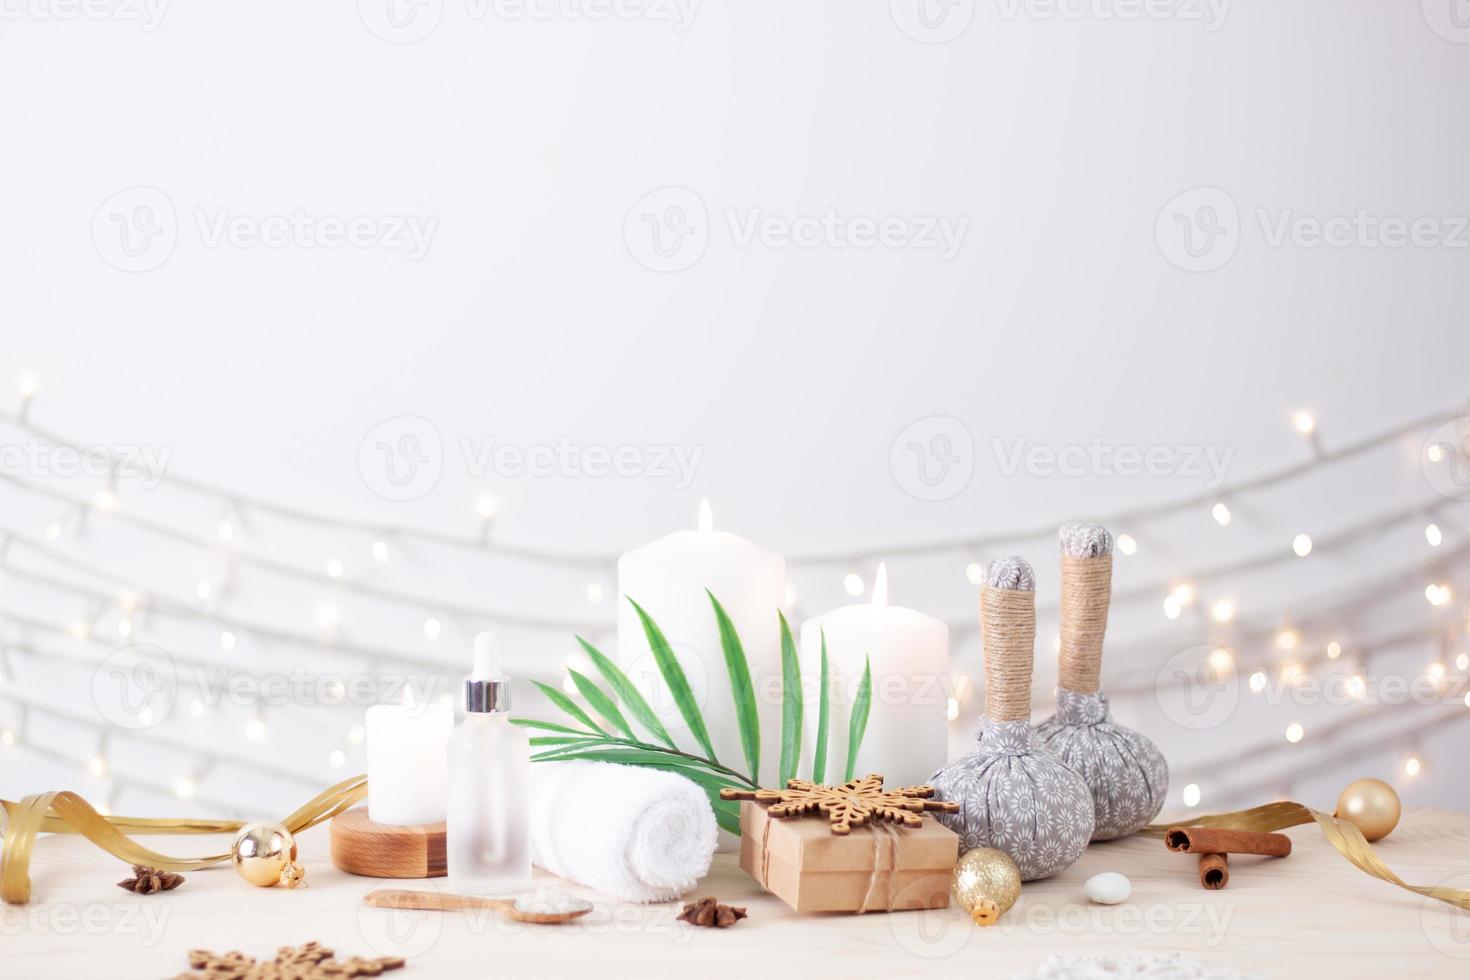 jul friska livsstil. spa behandling och avslappning begrepp på vit bakgrund. stänga upp, kopia Plats foto